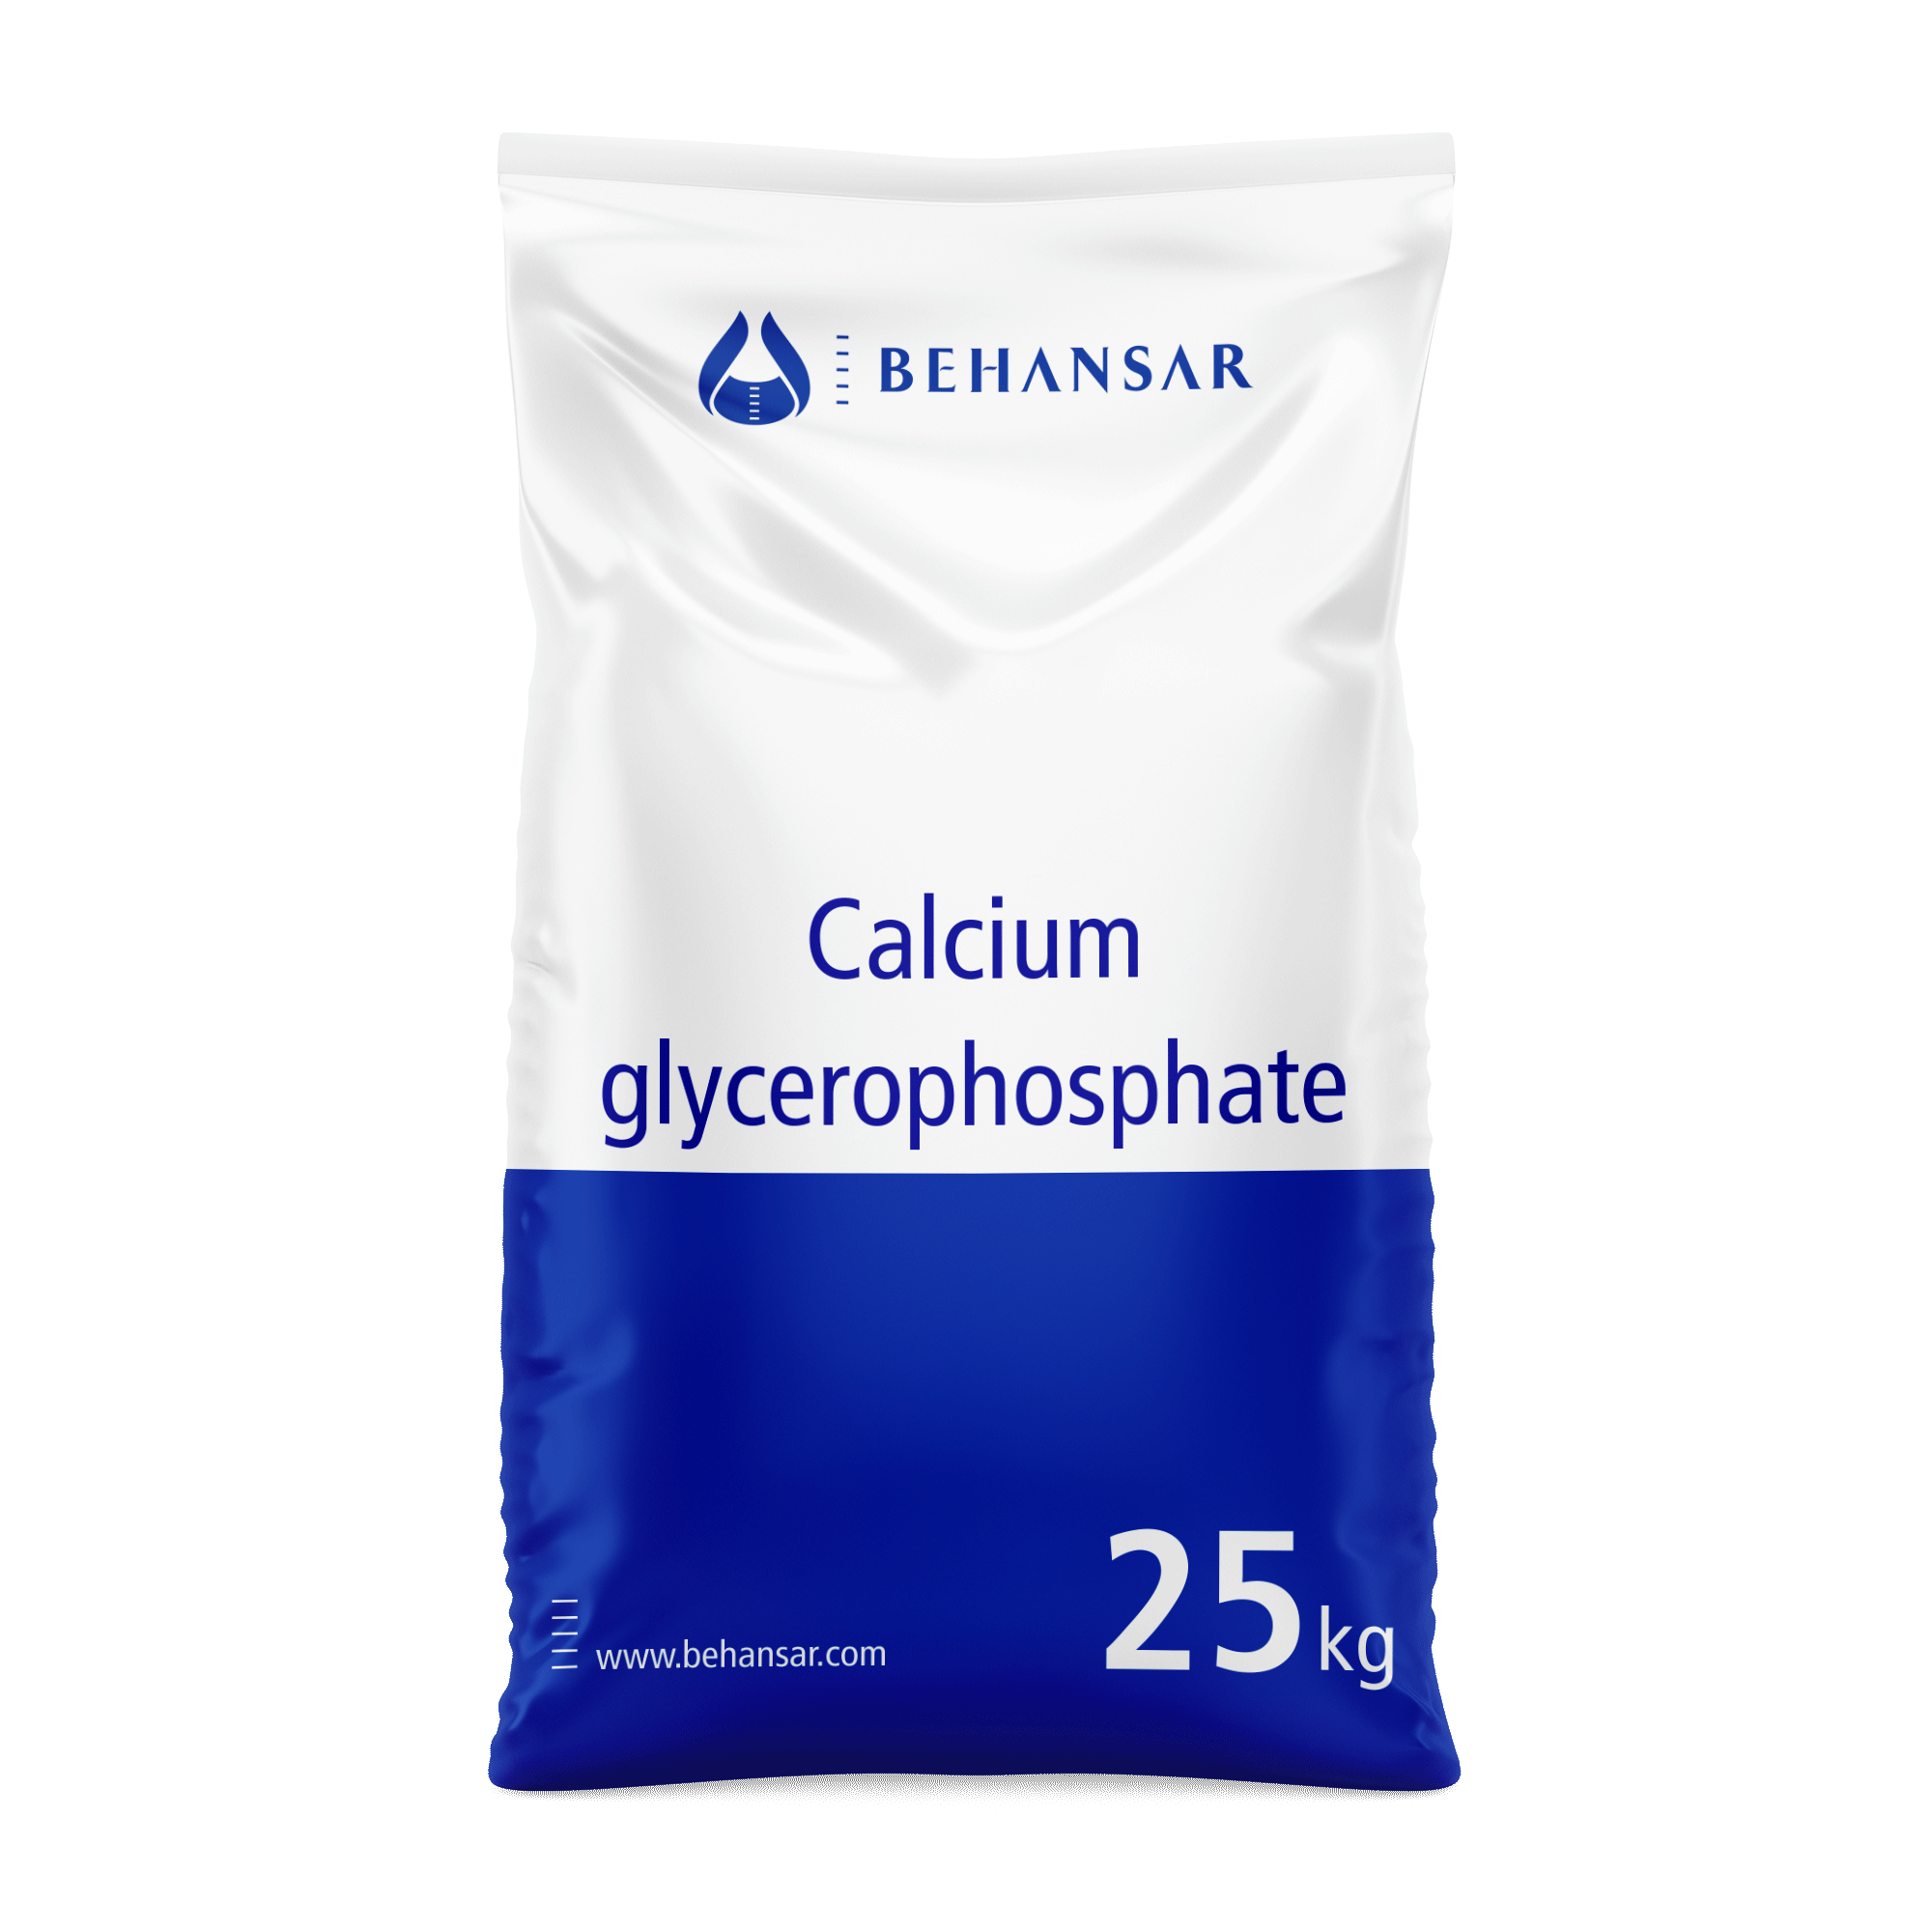 کلسیم گیلیسیرو فسفات یکی از تولیدات شرکت بهانسار است